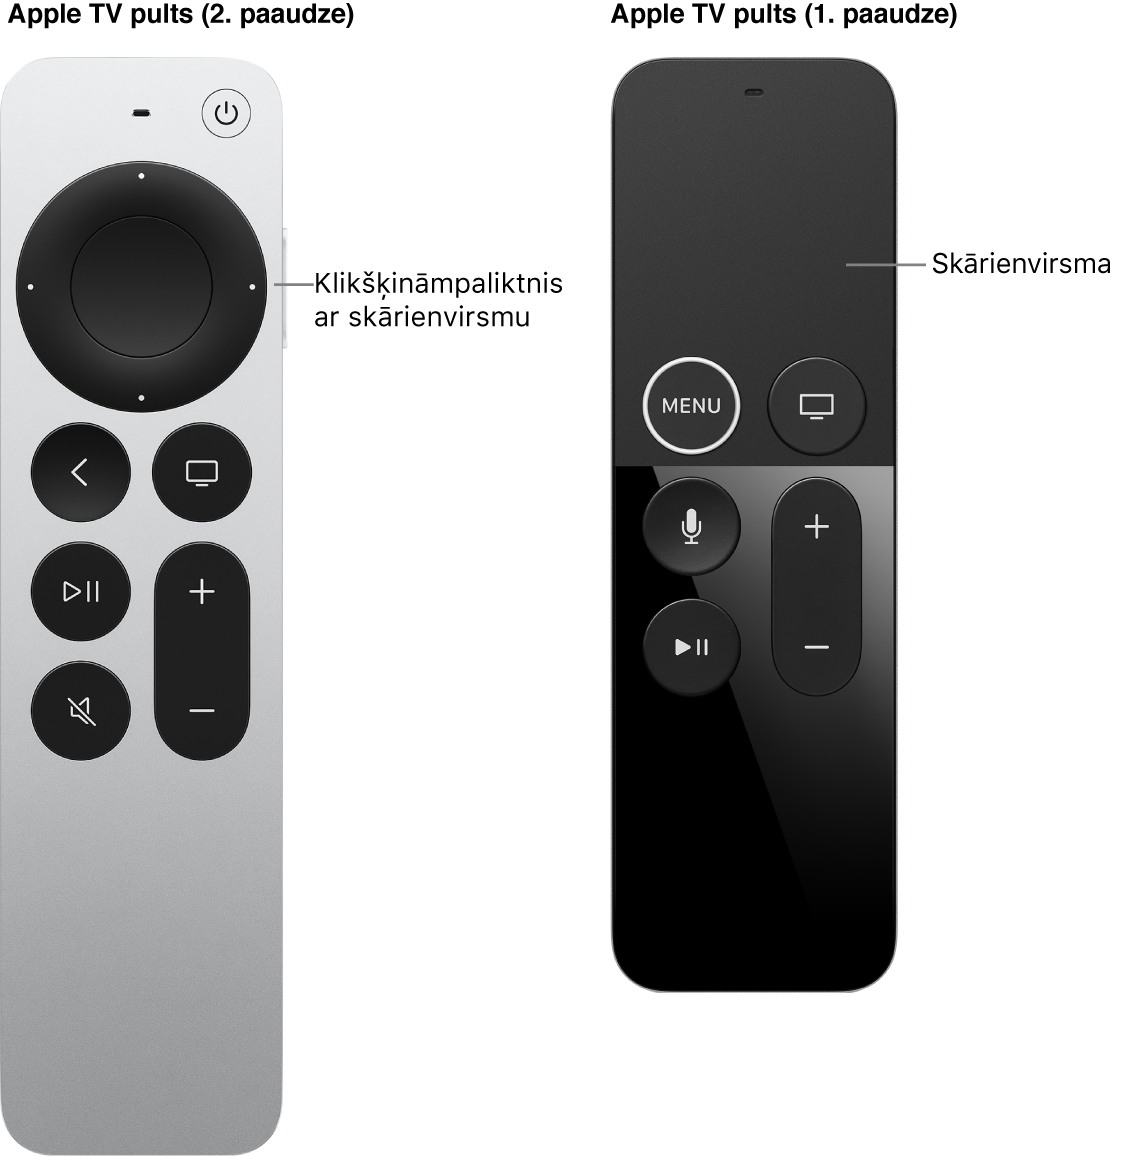 Apple TV Remote (otrās paaudzes) pults ar klikšķināmo virsmu un Apple TV Remote (pirmās paaudzes) pults ar skārienvirsmu.